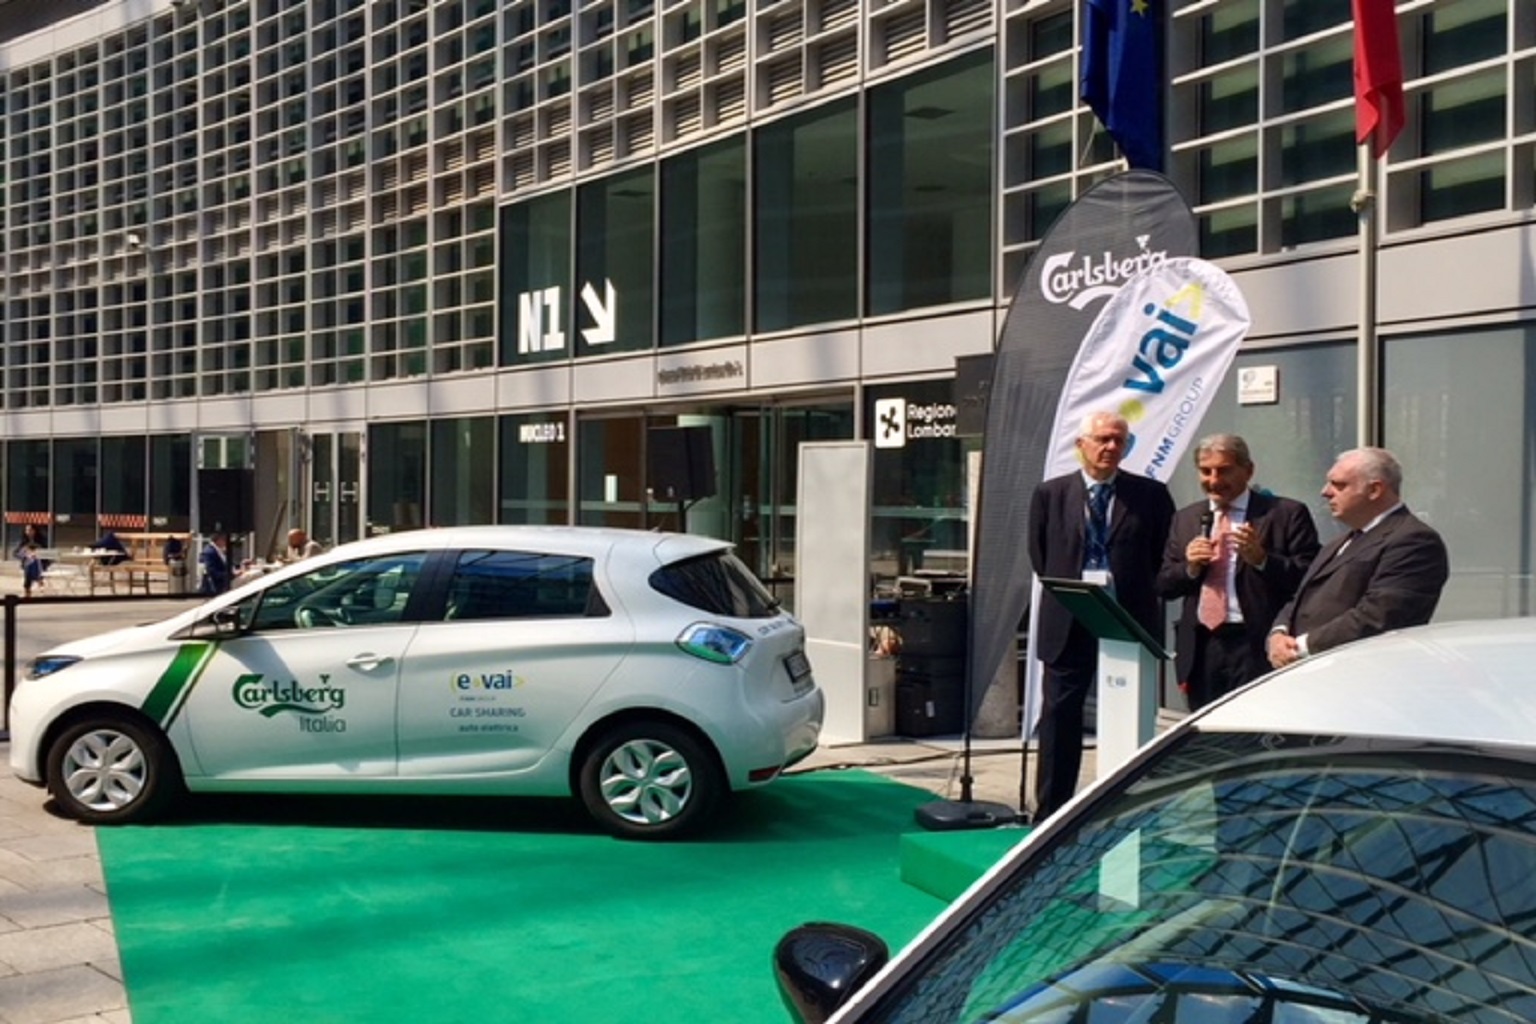 Car sharing ecologico: in Lombardia siglata intesa tra E-vai e Carlsberg